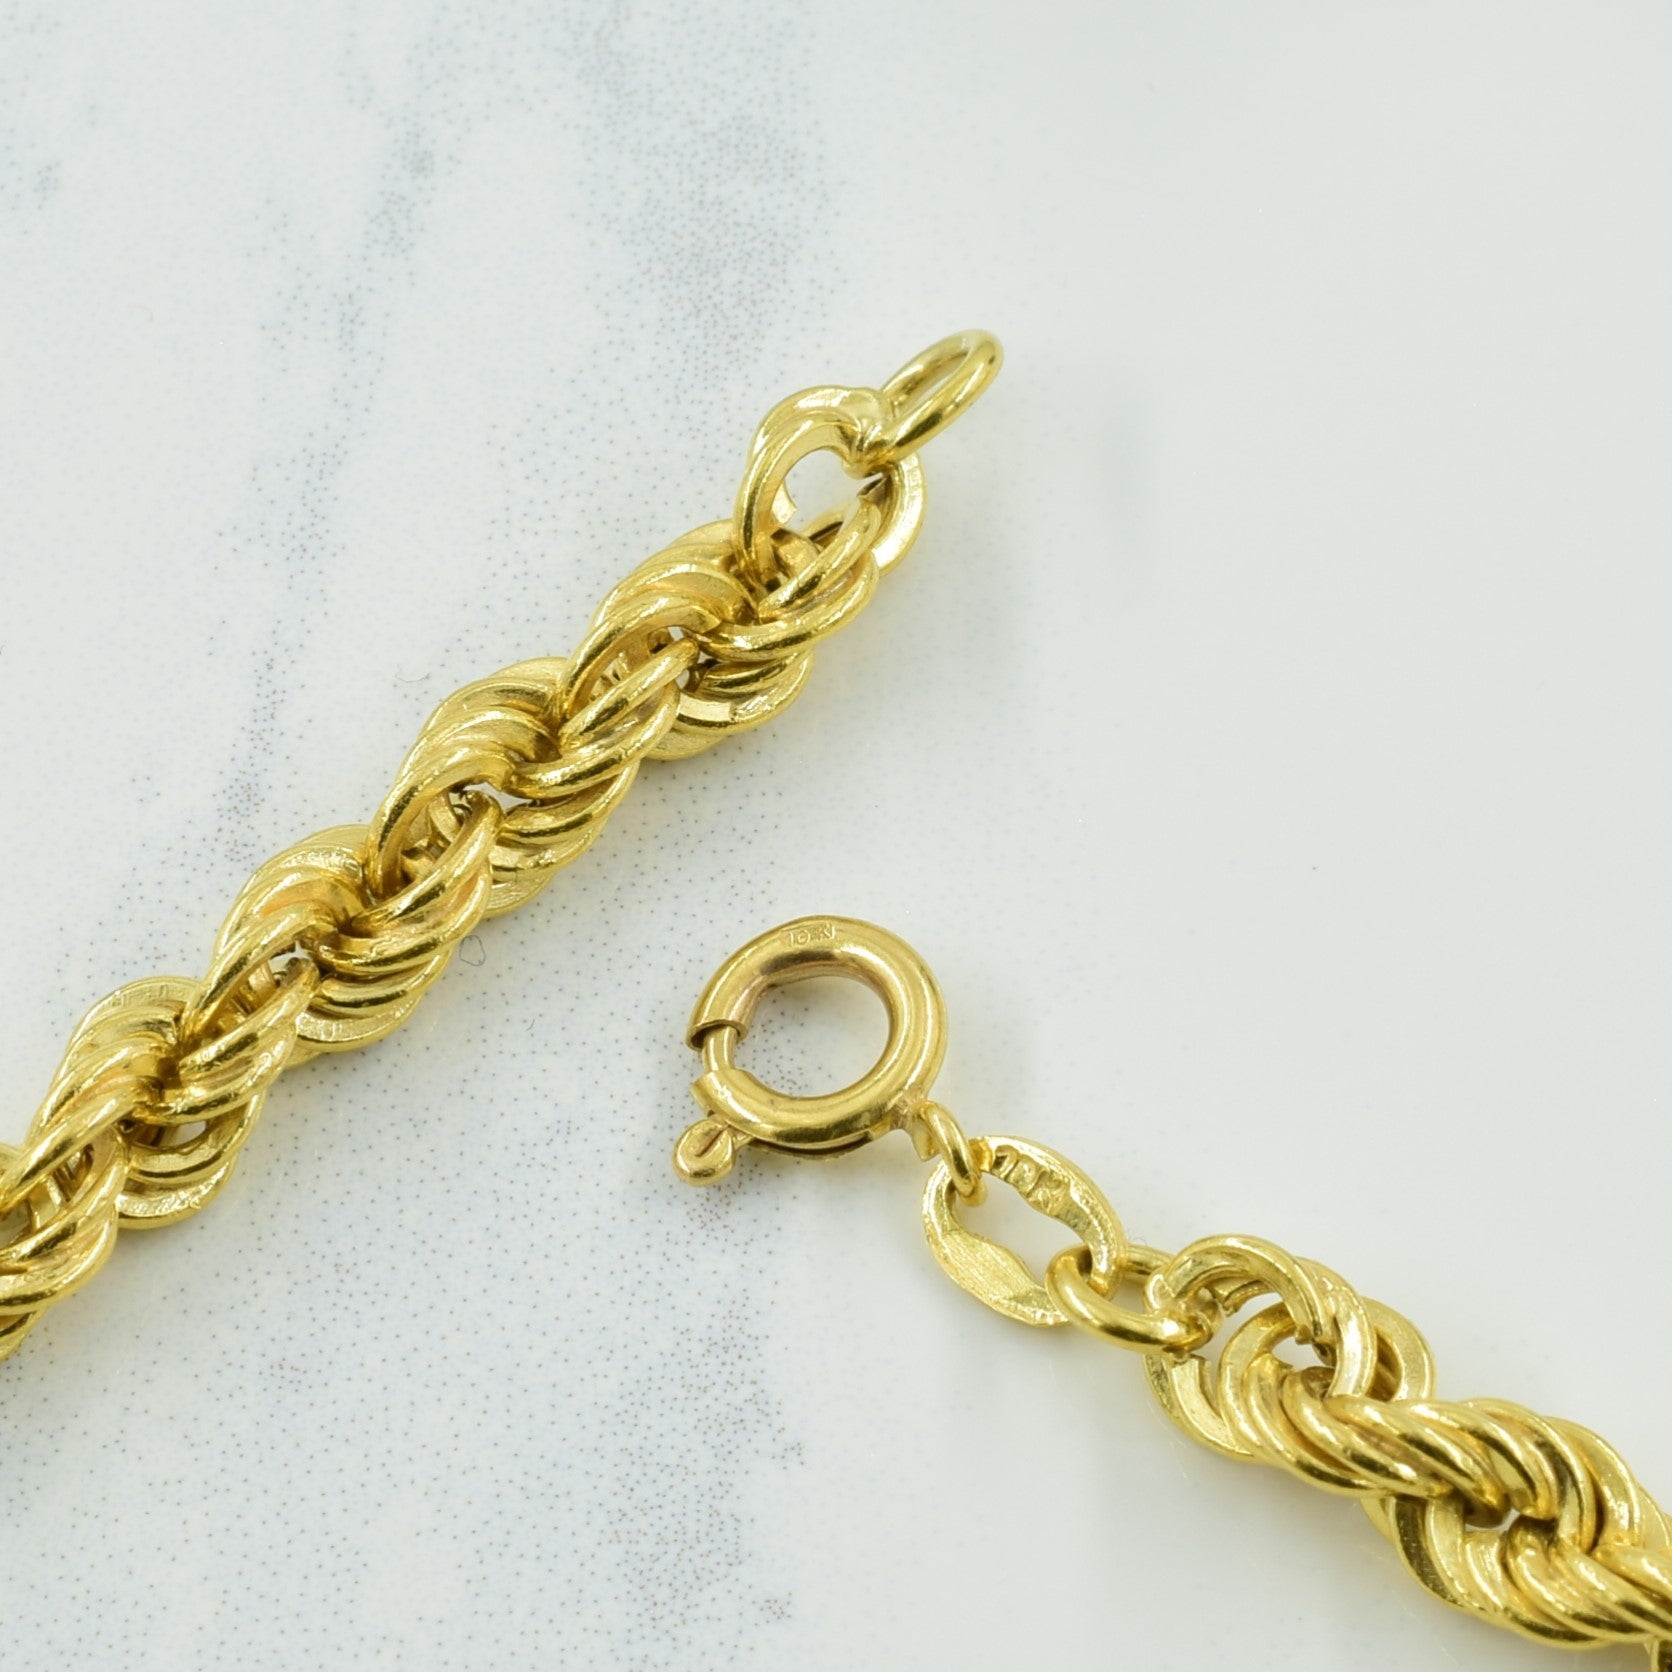 10k Yellow Gold Rope Chain | 19.5